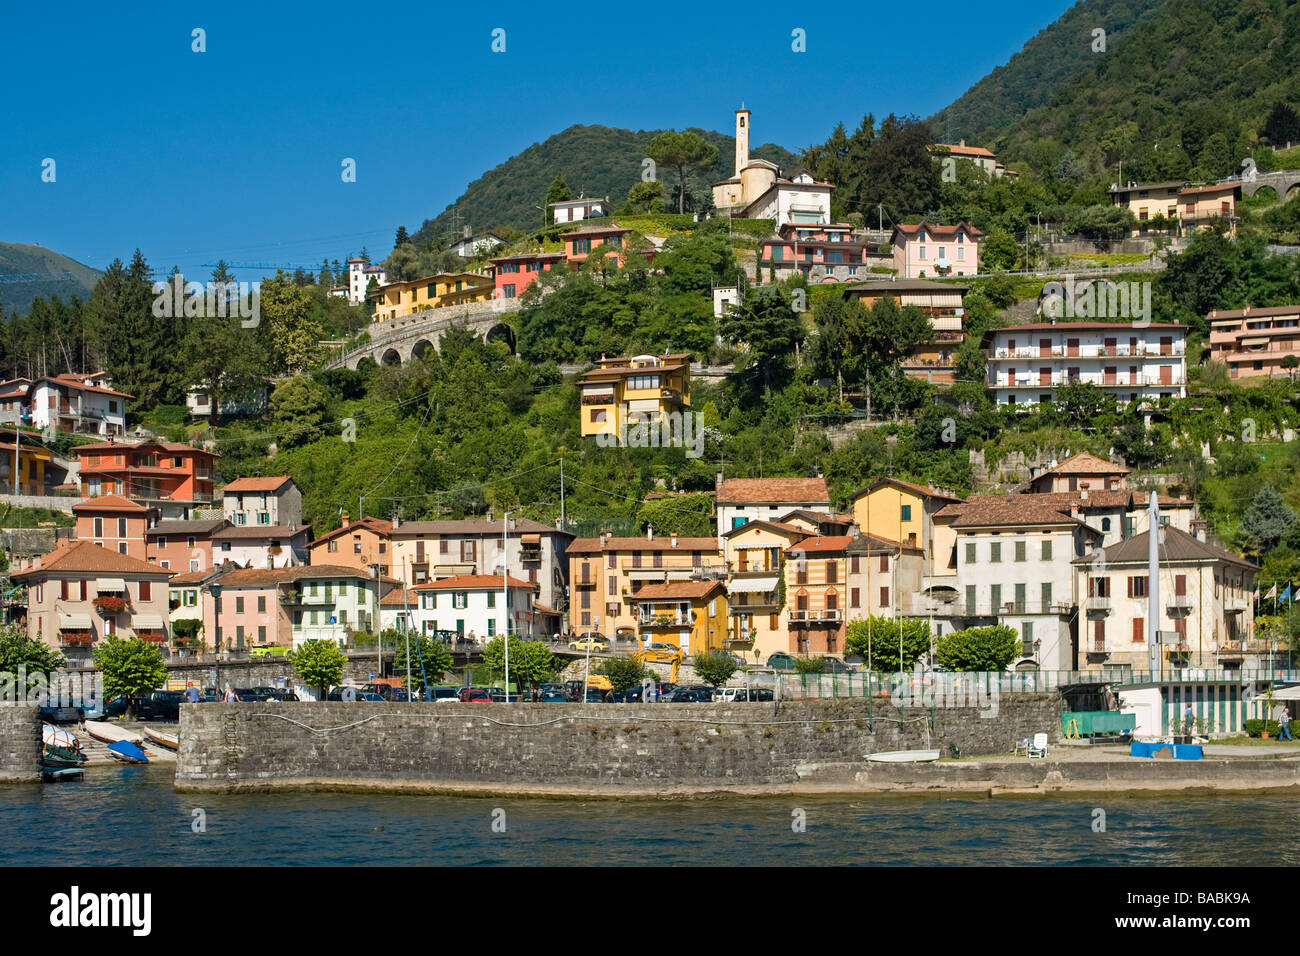 Comune of Argegno, Lake Como, Italy Stock Photo